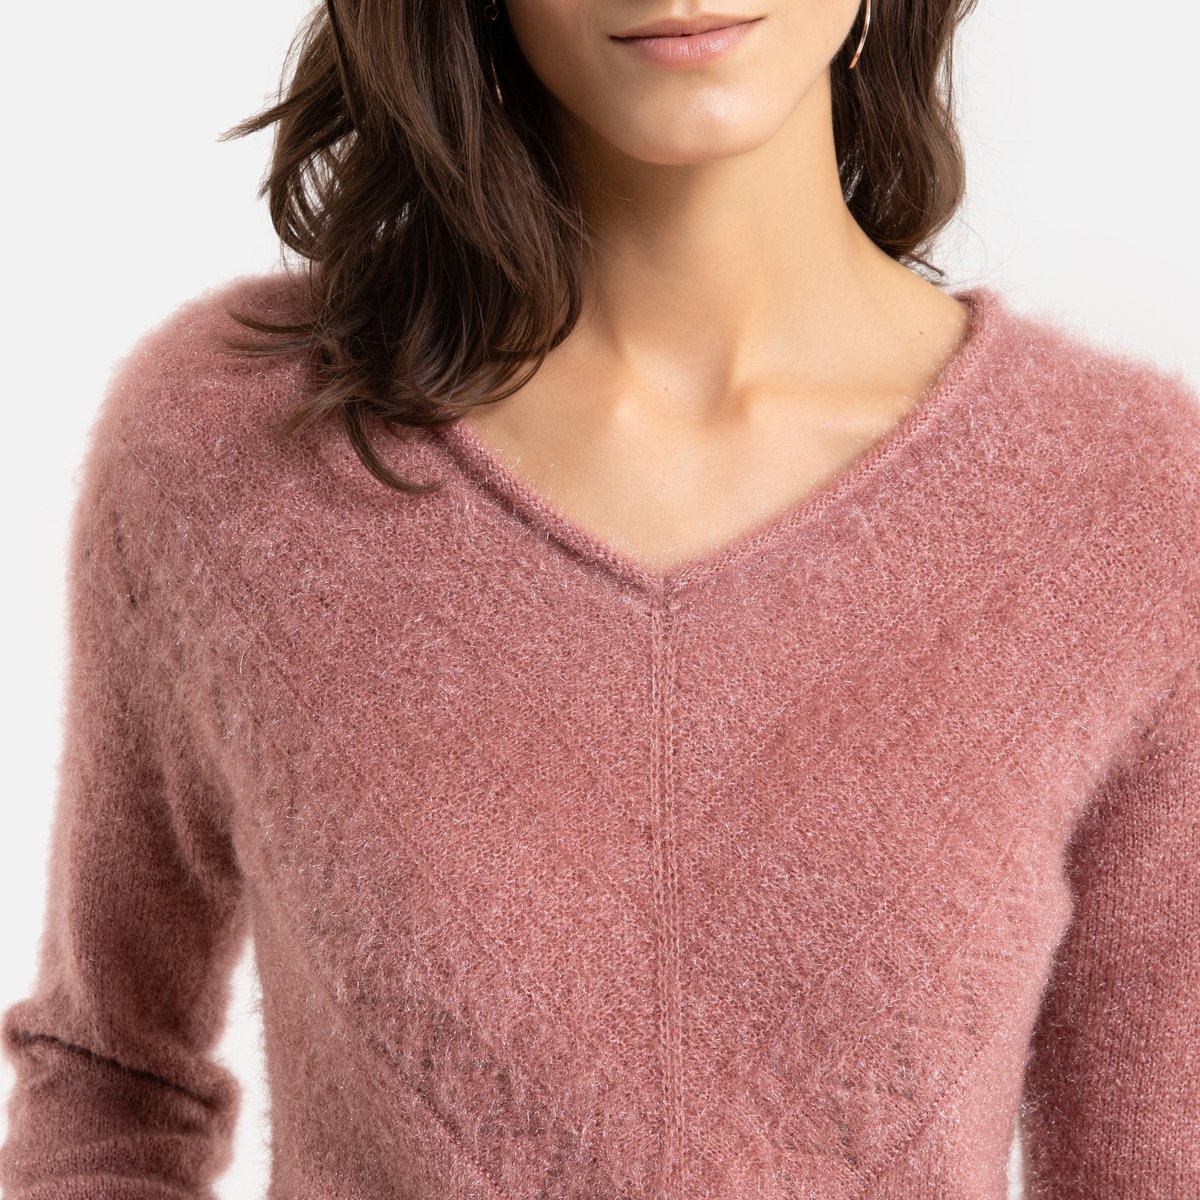 Пуловер La Redoute С V-образным вырезом из плотного трикотажа 50/52 (FR) - 56/58 (RUS) розовый, размер 50/52 (FR) - 56/58 (RUS) С V-образным вырезом из плотного трикотажа 50/52 (FR) - 56/58 (RUS) розовый - фото 3